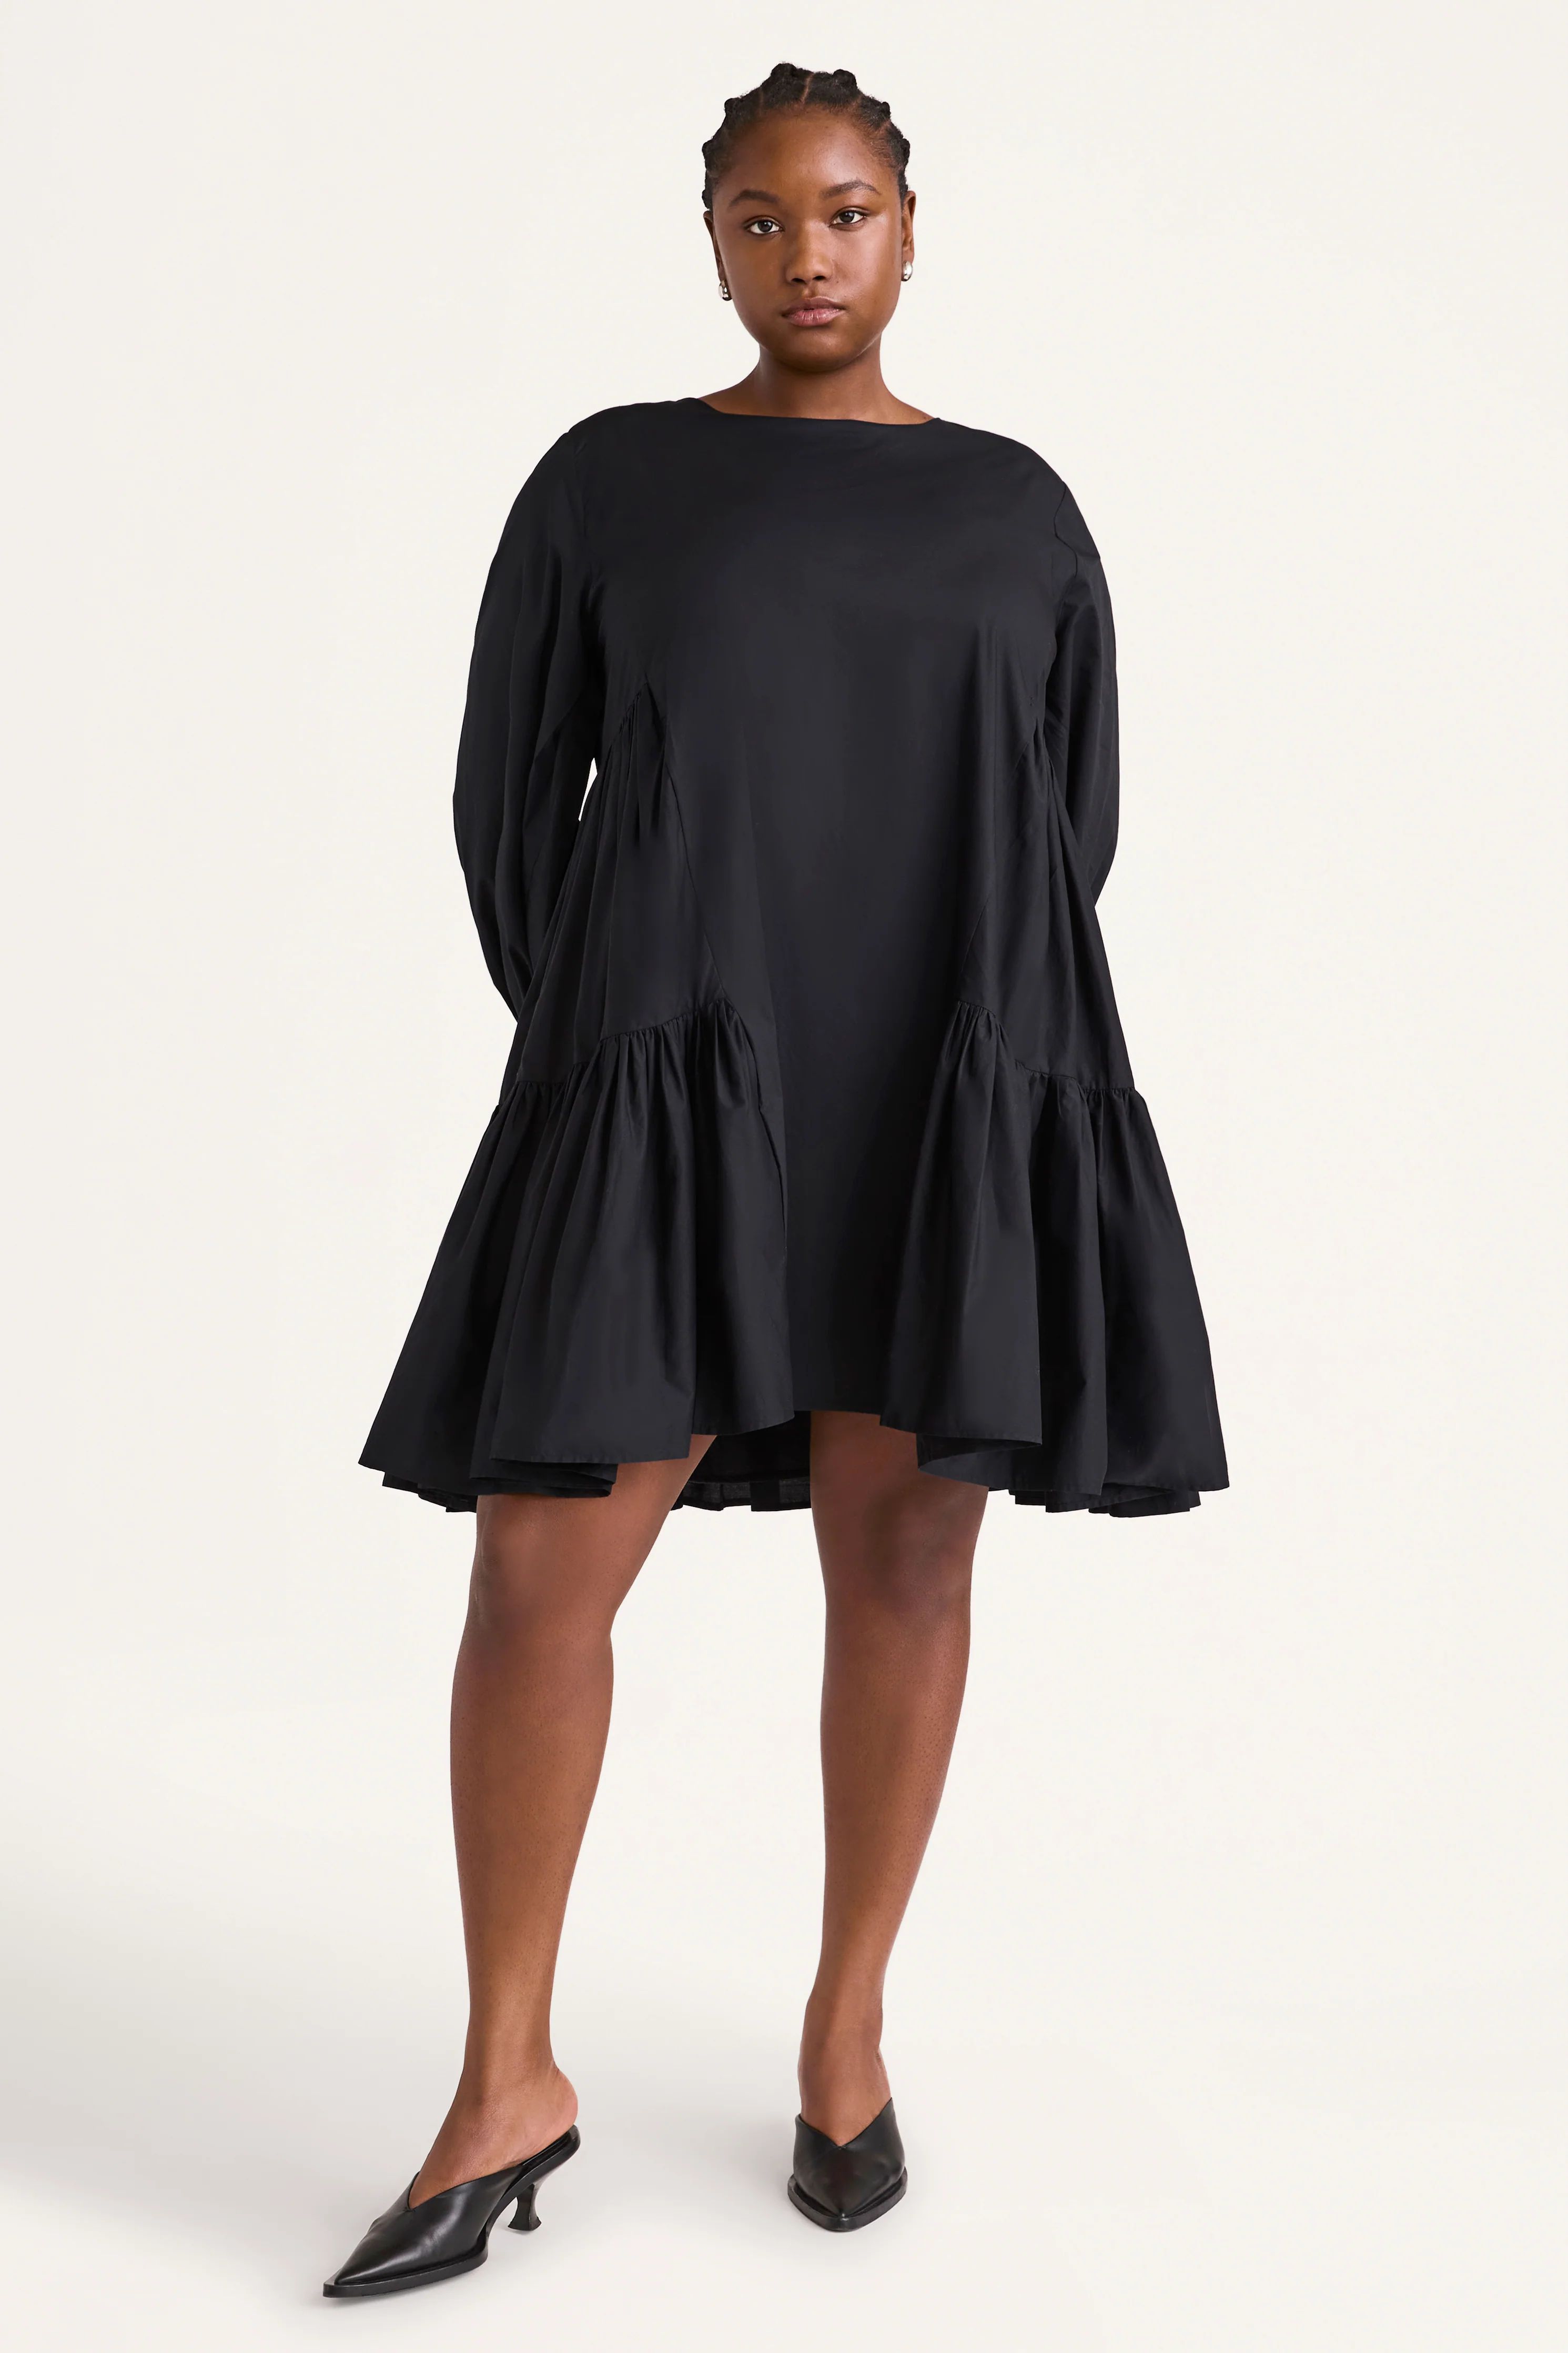 Merlette Byward Dress in Black | Merlette NYC